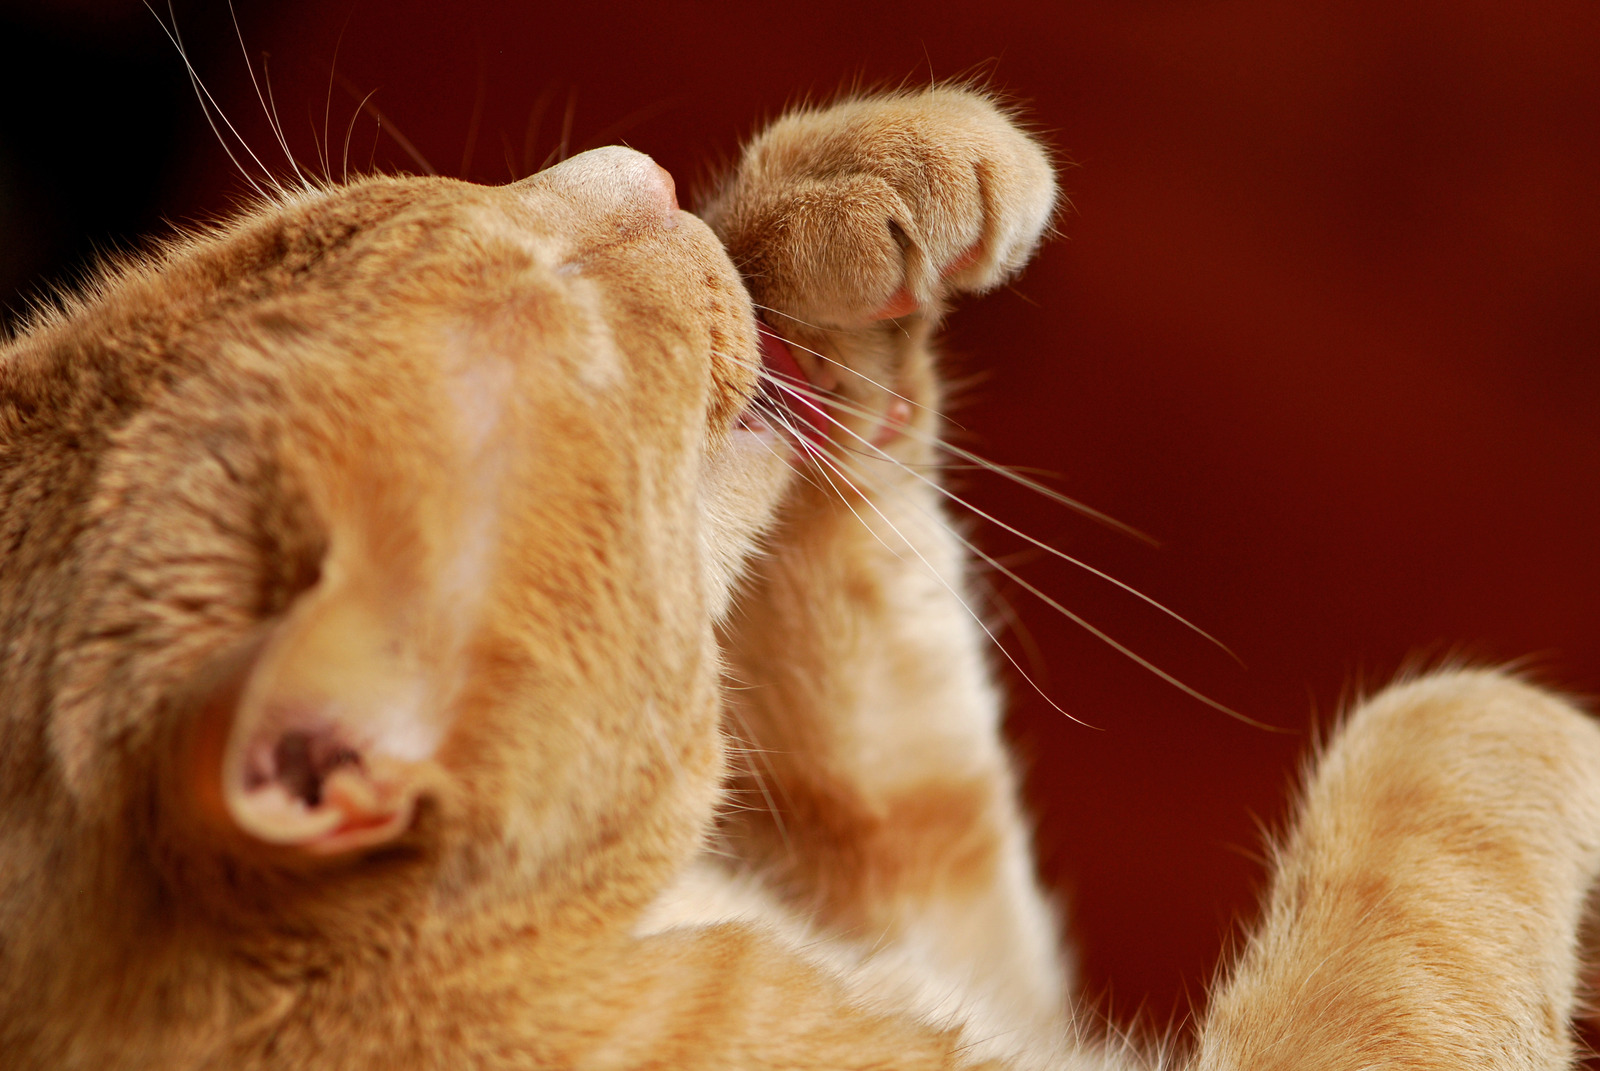 Rode kat likt aan poot van stress